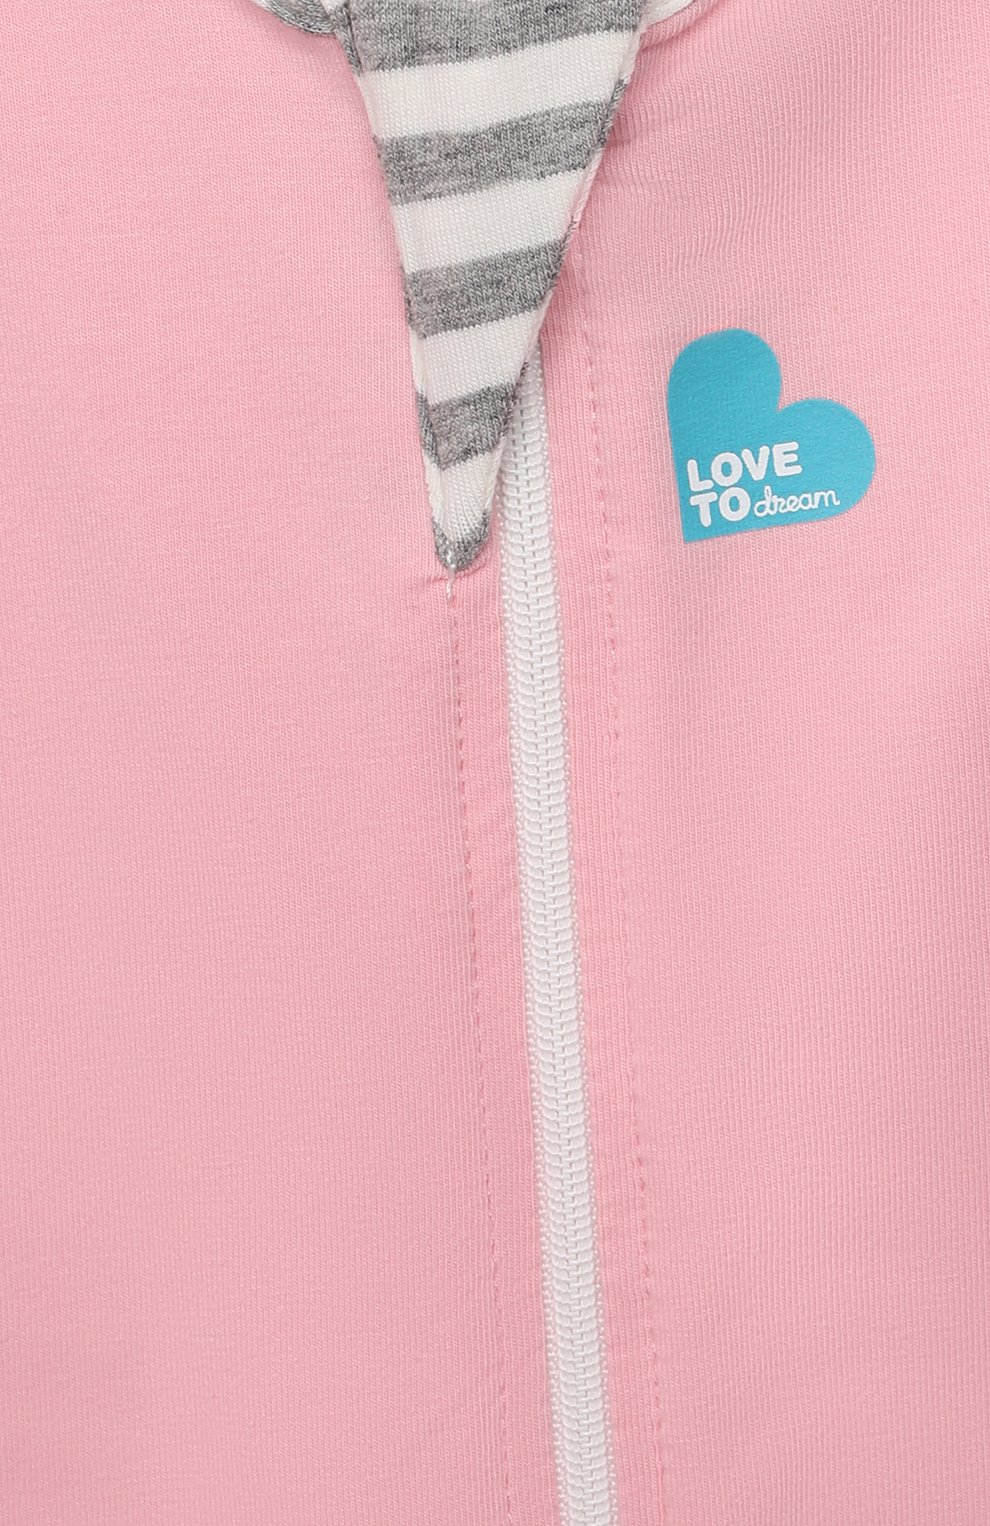 Детский спальный комбинезон 1 этап LOVE TO DREAM розового цвета, арт. L10 01 001 PK NB | Фото 3 (Материал внешний: Хлопок)